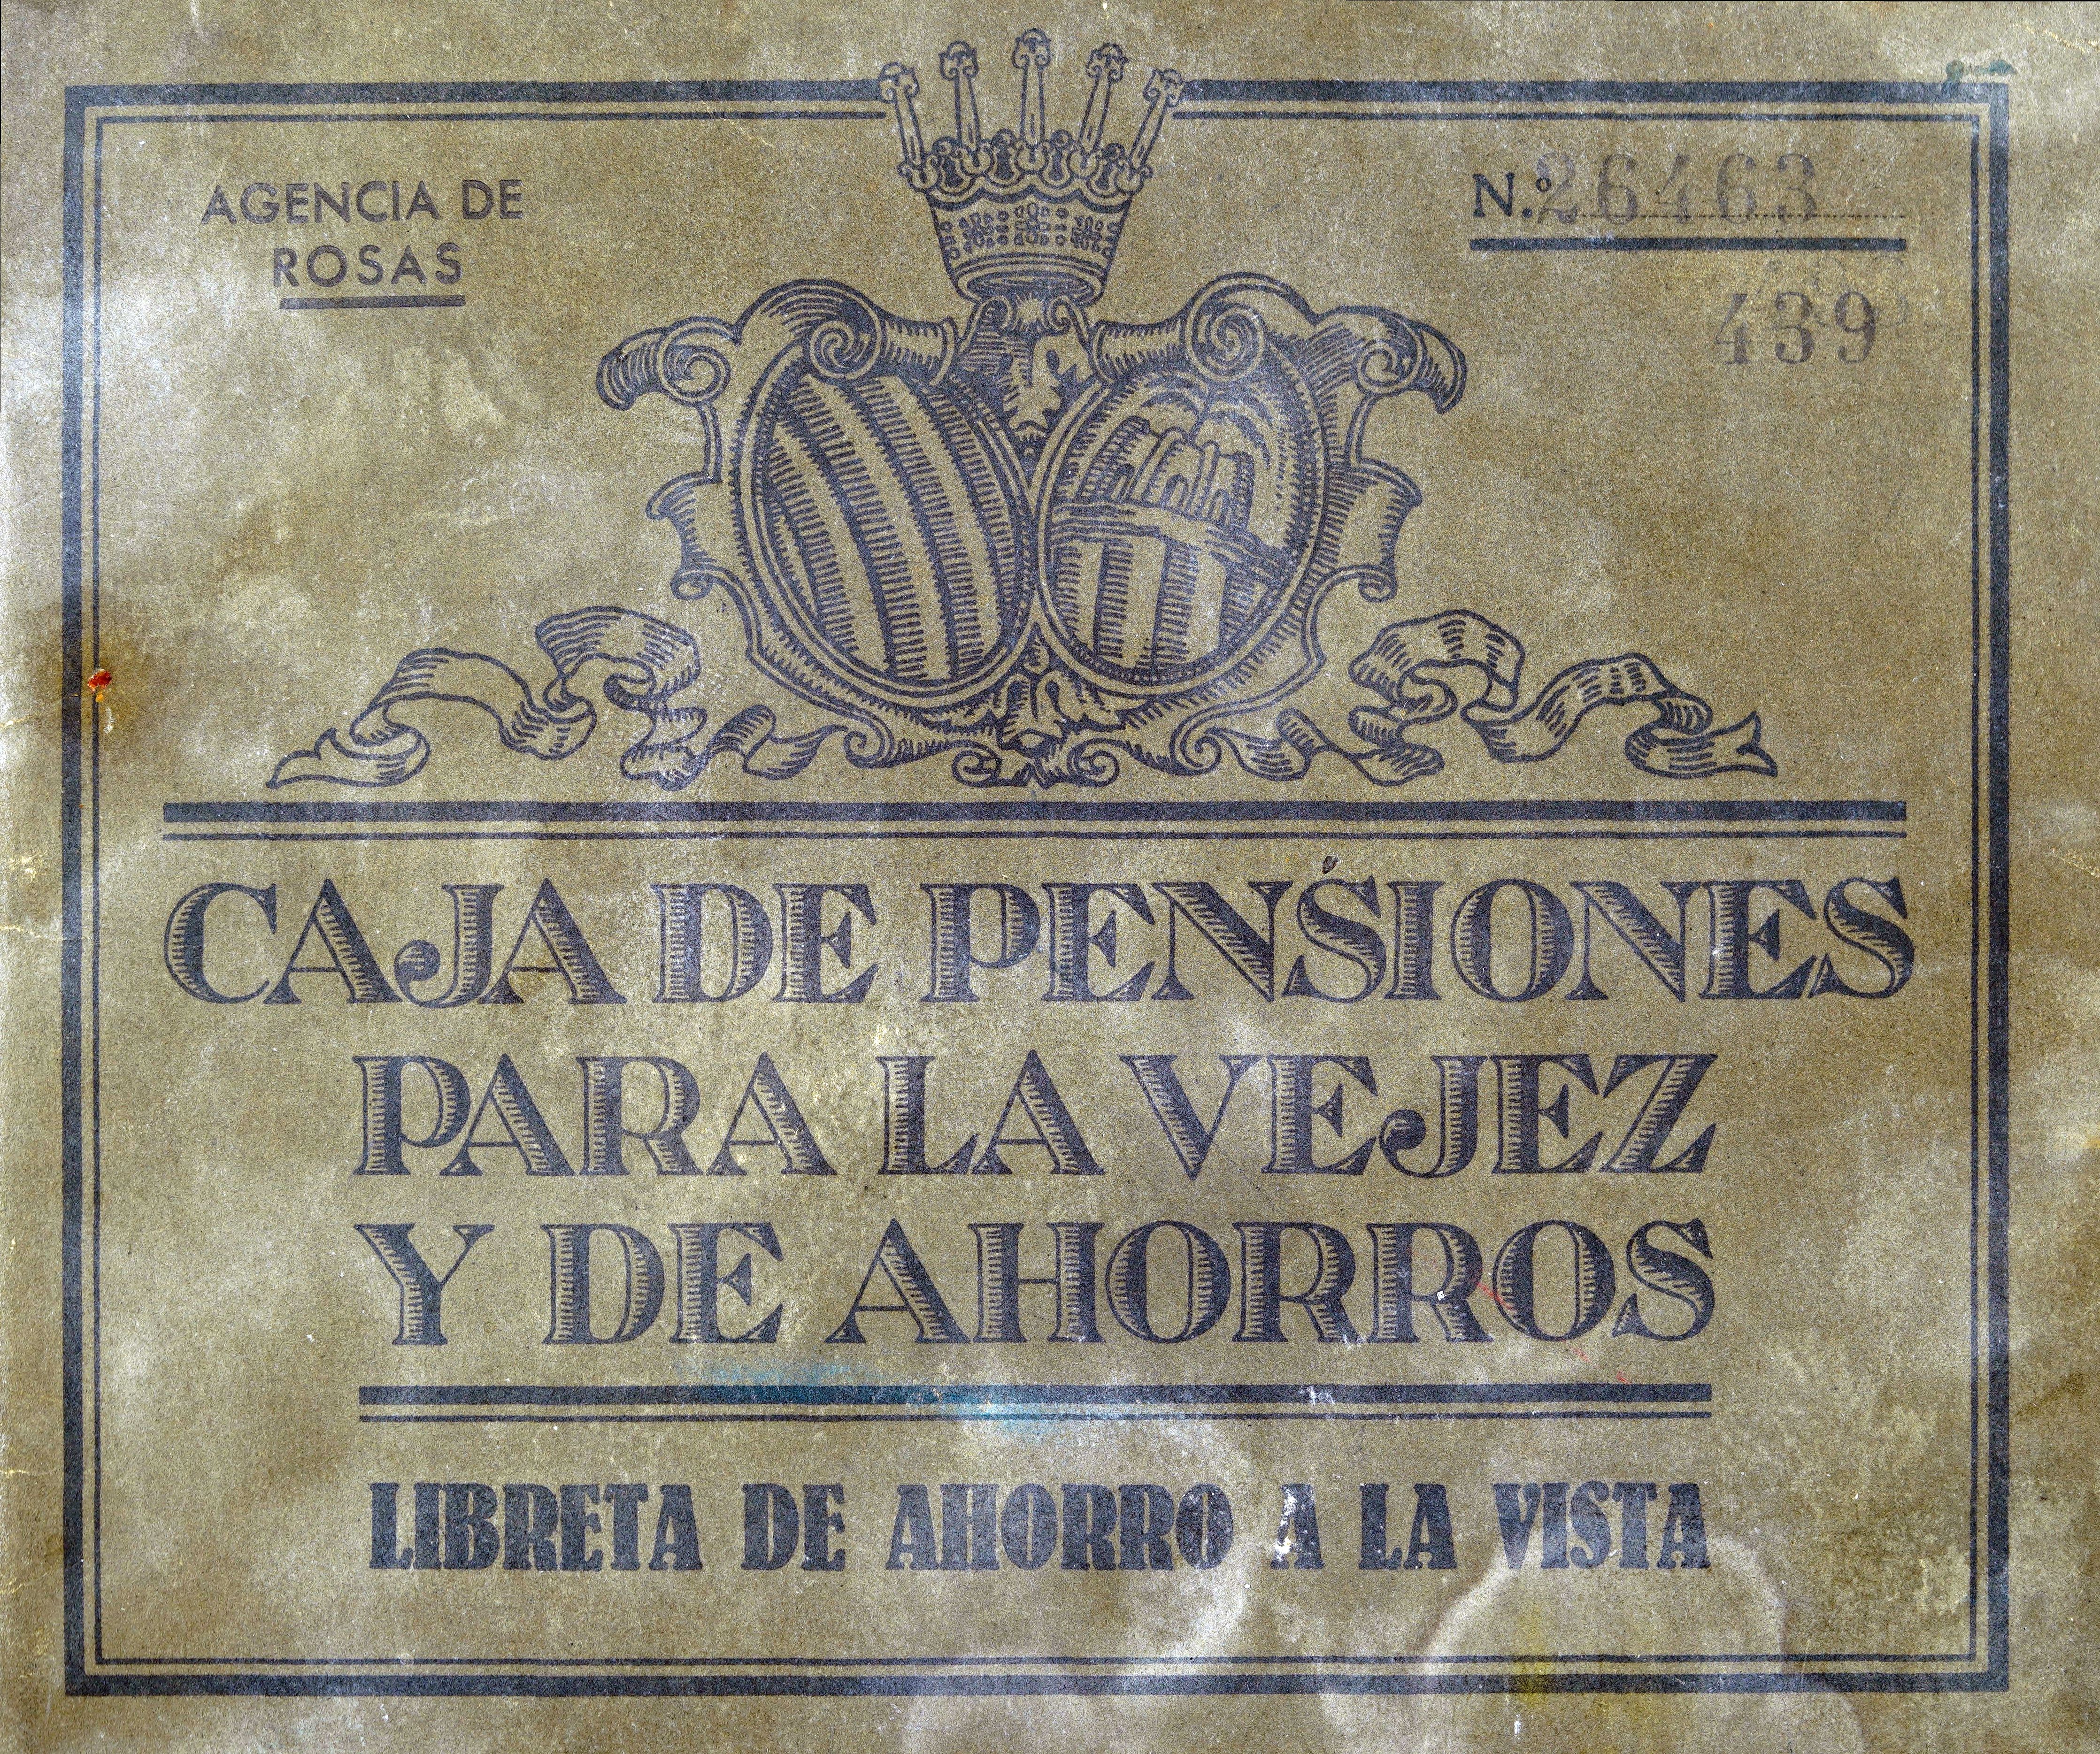 Llibreta de la Caixa de Pensions